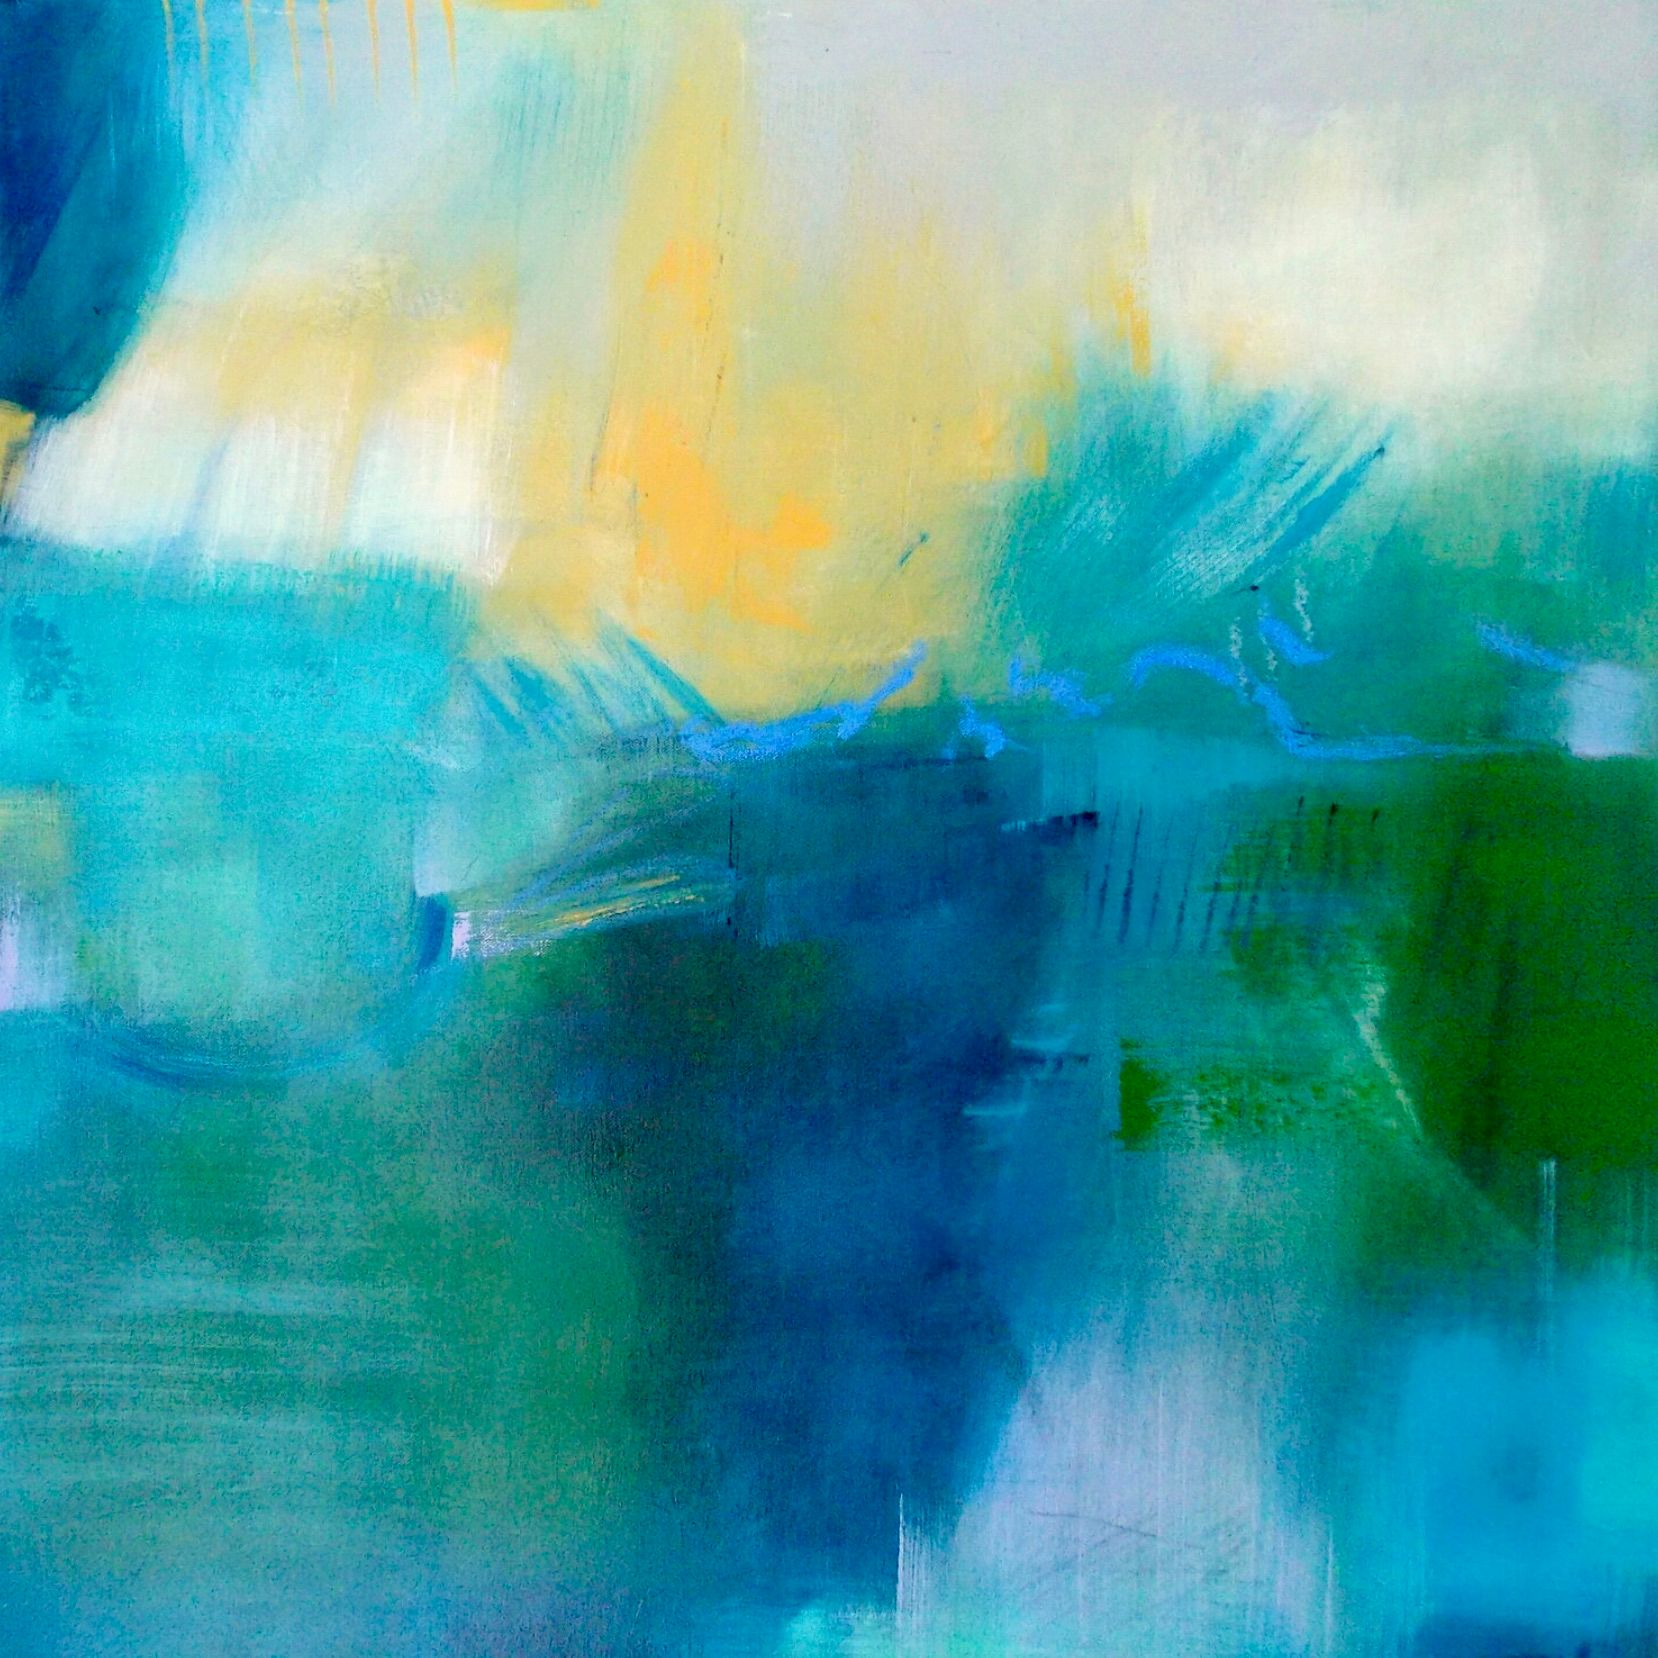 Amanecer en el lago" de Christa Haack Esta pintura abstracta llena de color muestra un lago en el que sólo contrastan el blanco, el verde y el azul. A continuación, se añade otro color en forma de remolino para llenar la obra de atrevidos trazos y acción.